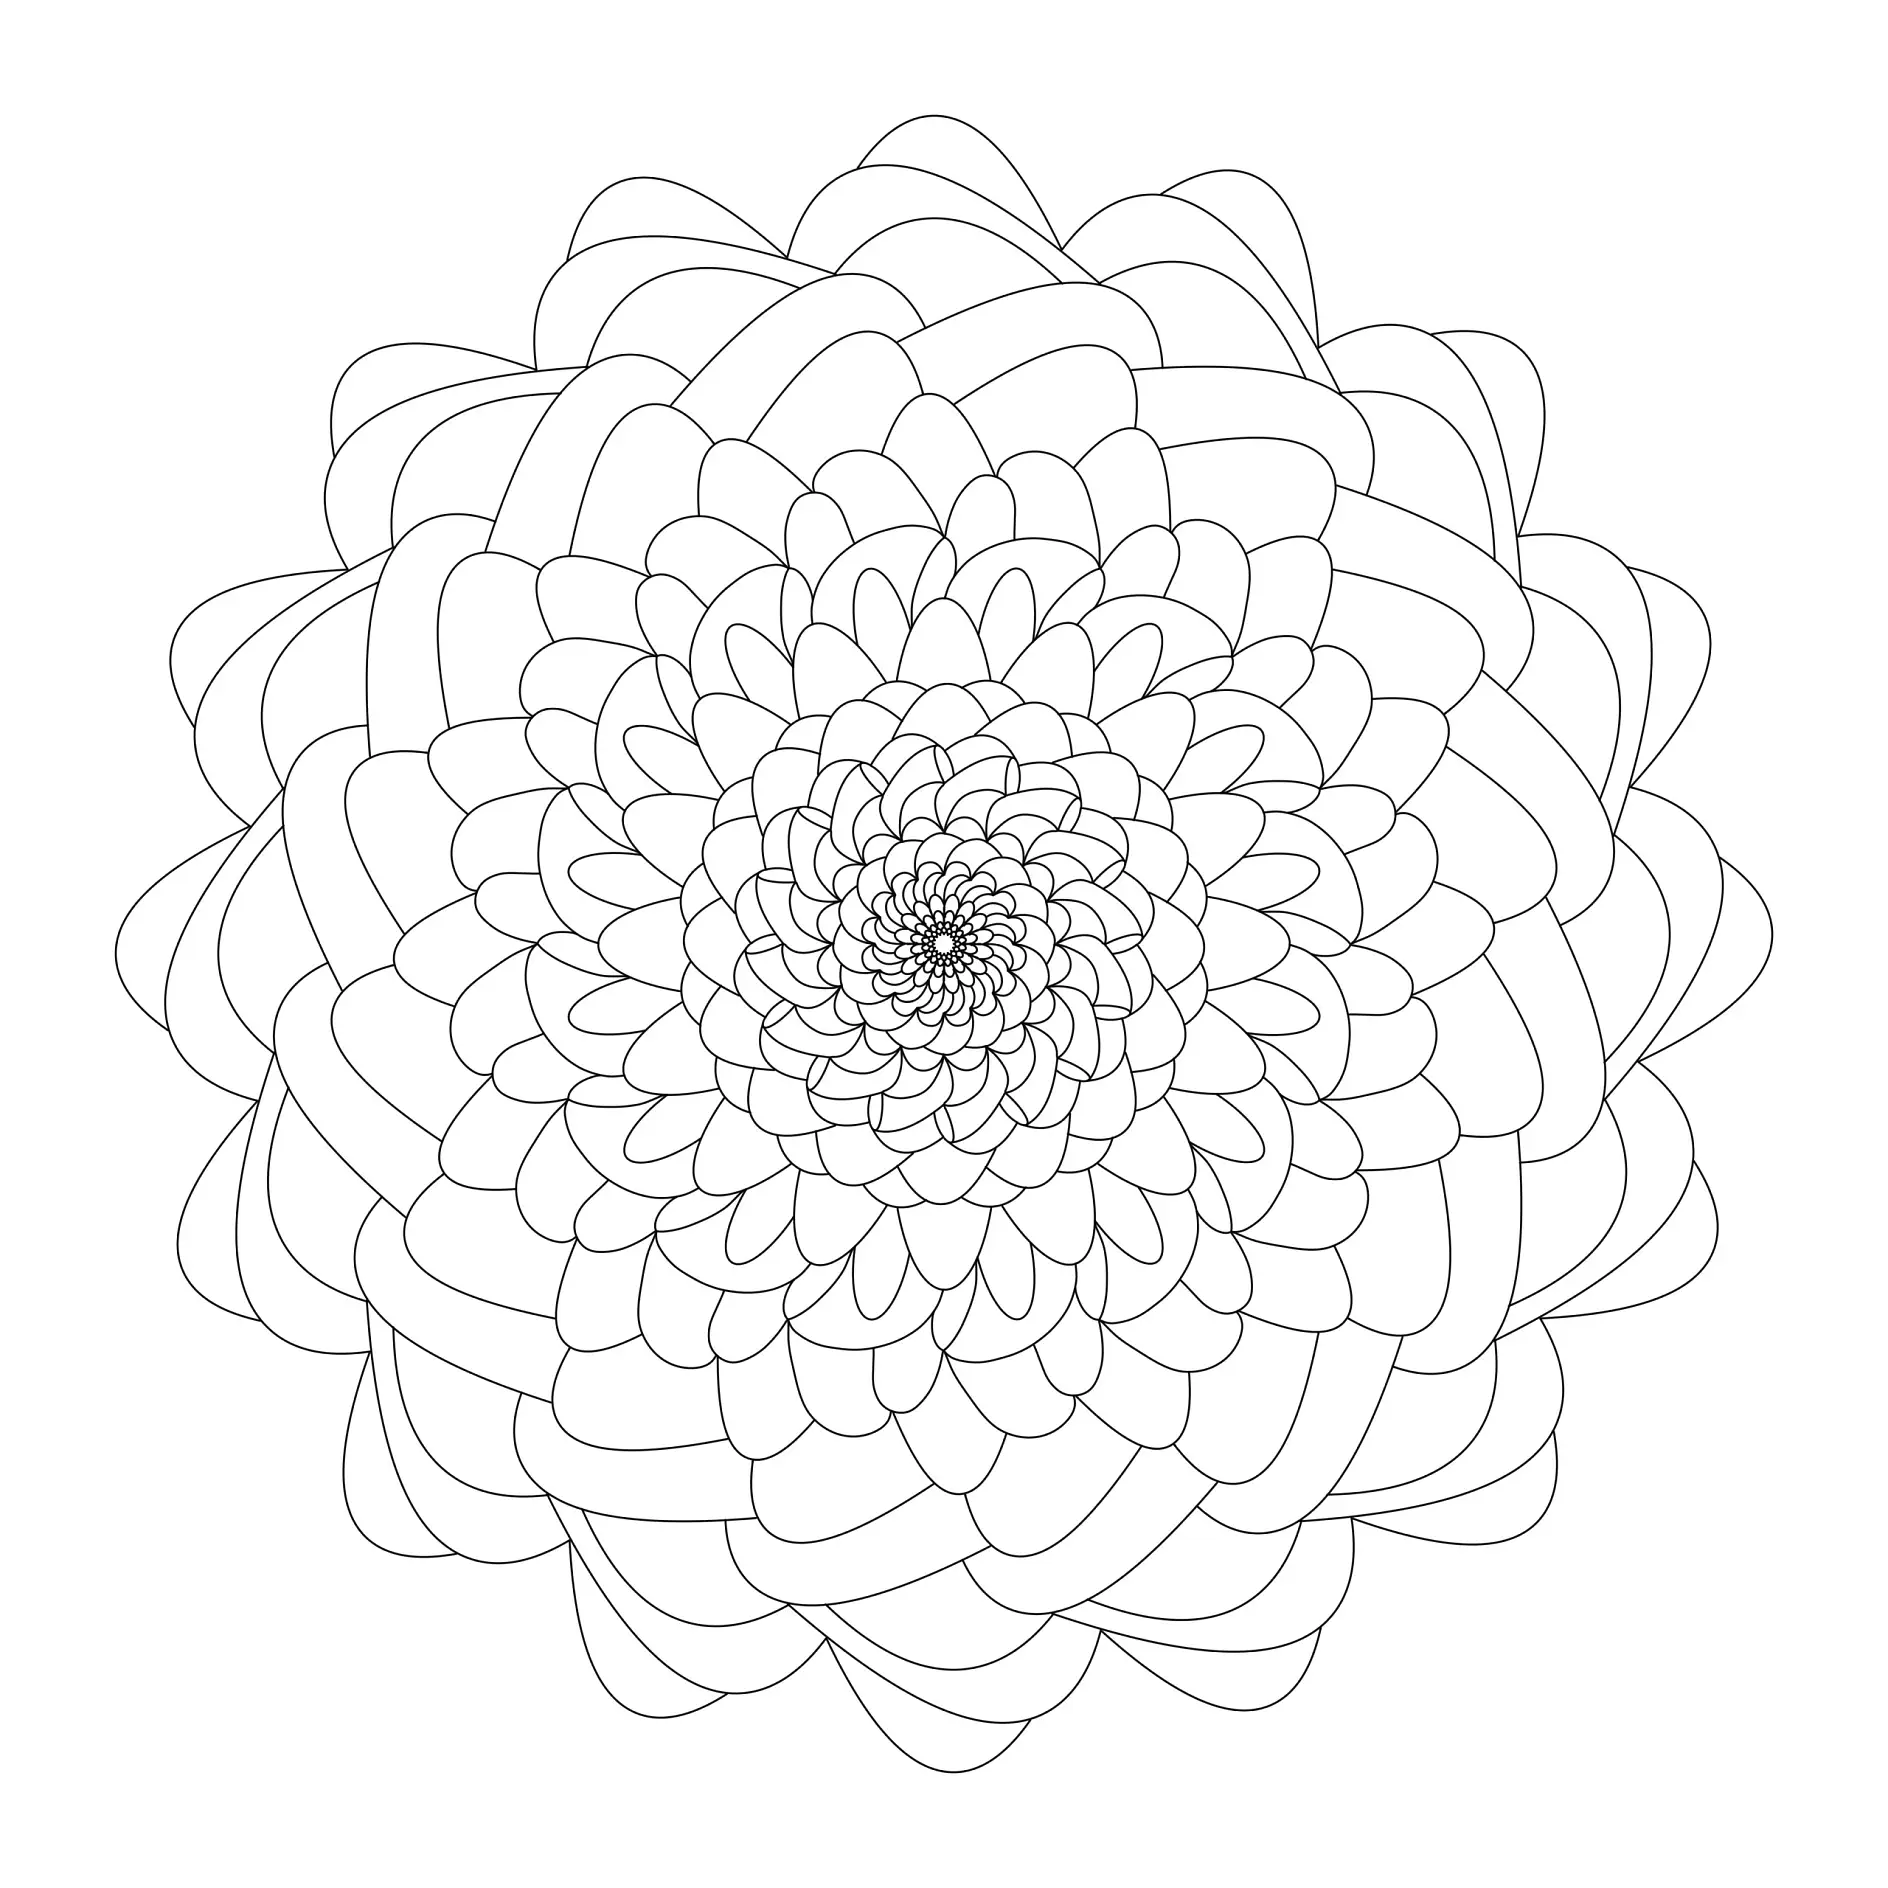 Ausmalbild Mandala mit Blumen und spiralförmigen Blütenblättern